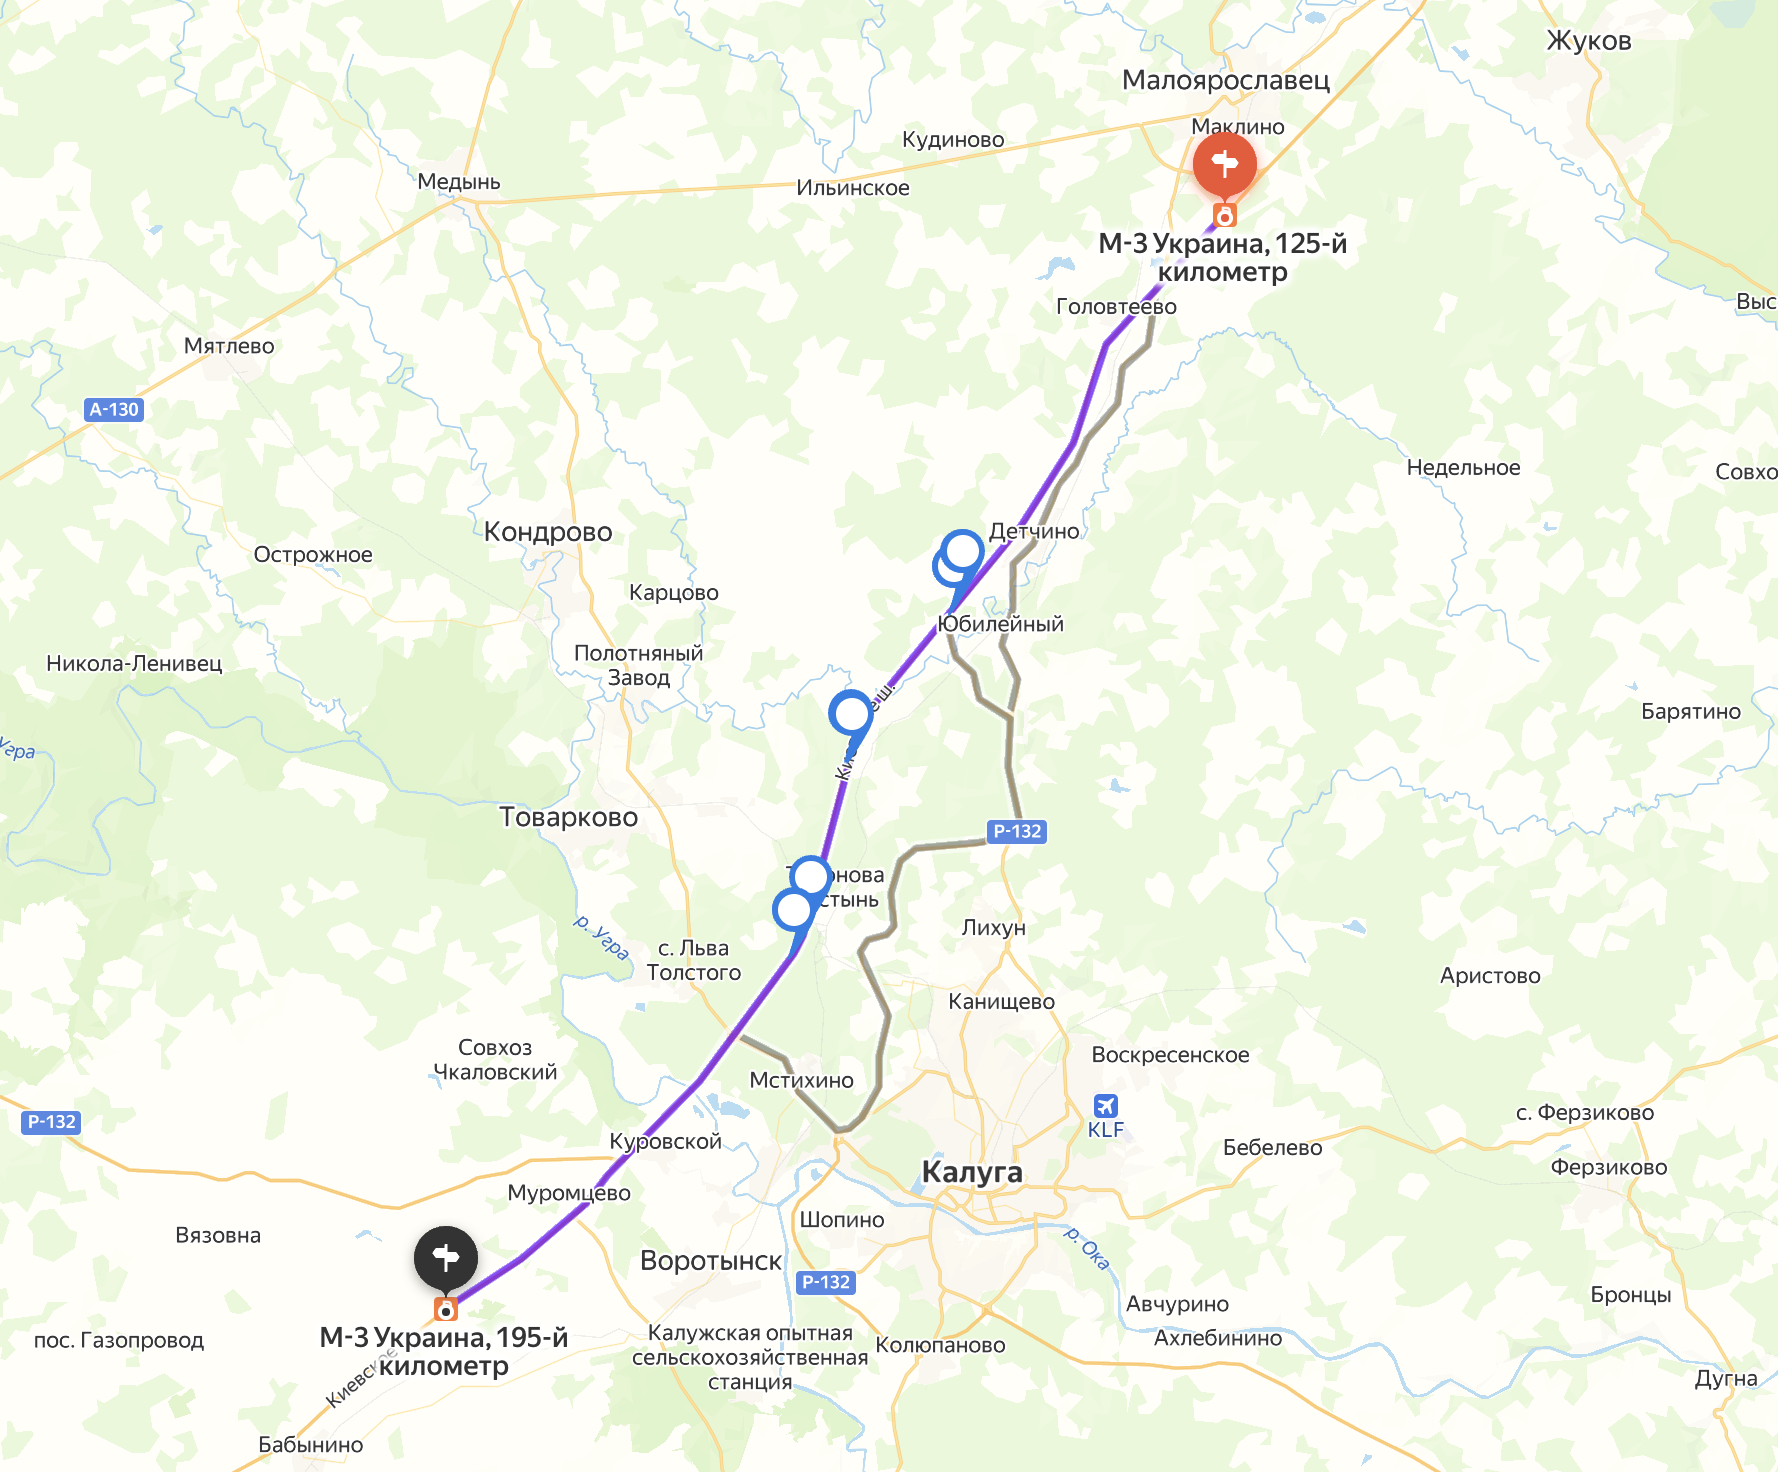 Поездка по платному участку на скорости 110 км/ч занимает 40 минут. Источник: «Яндекс Карты»